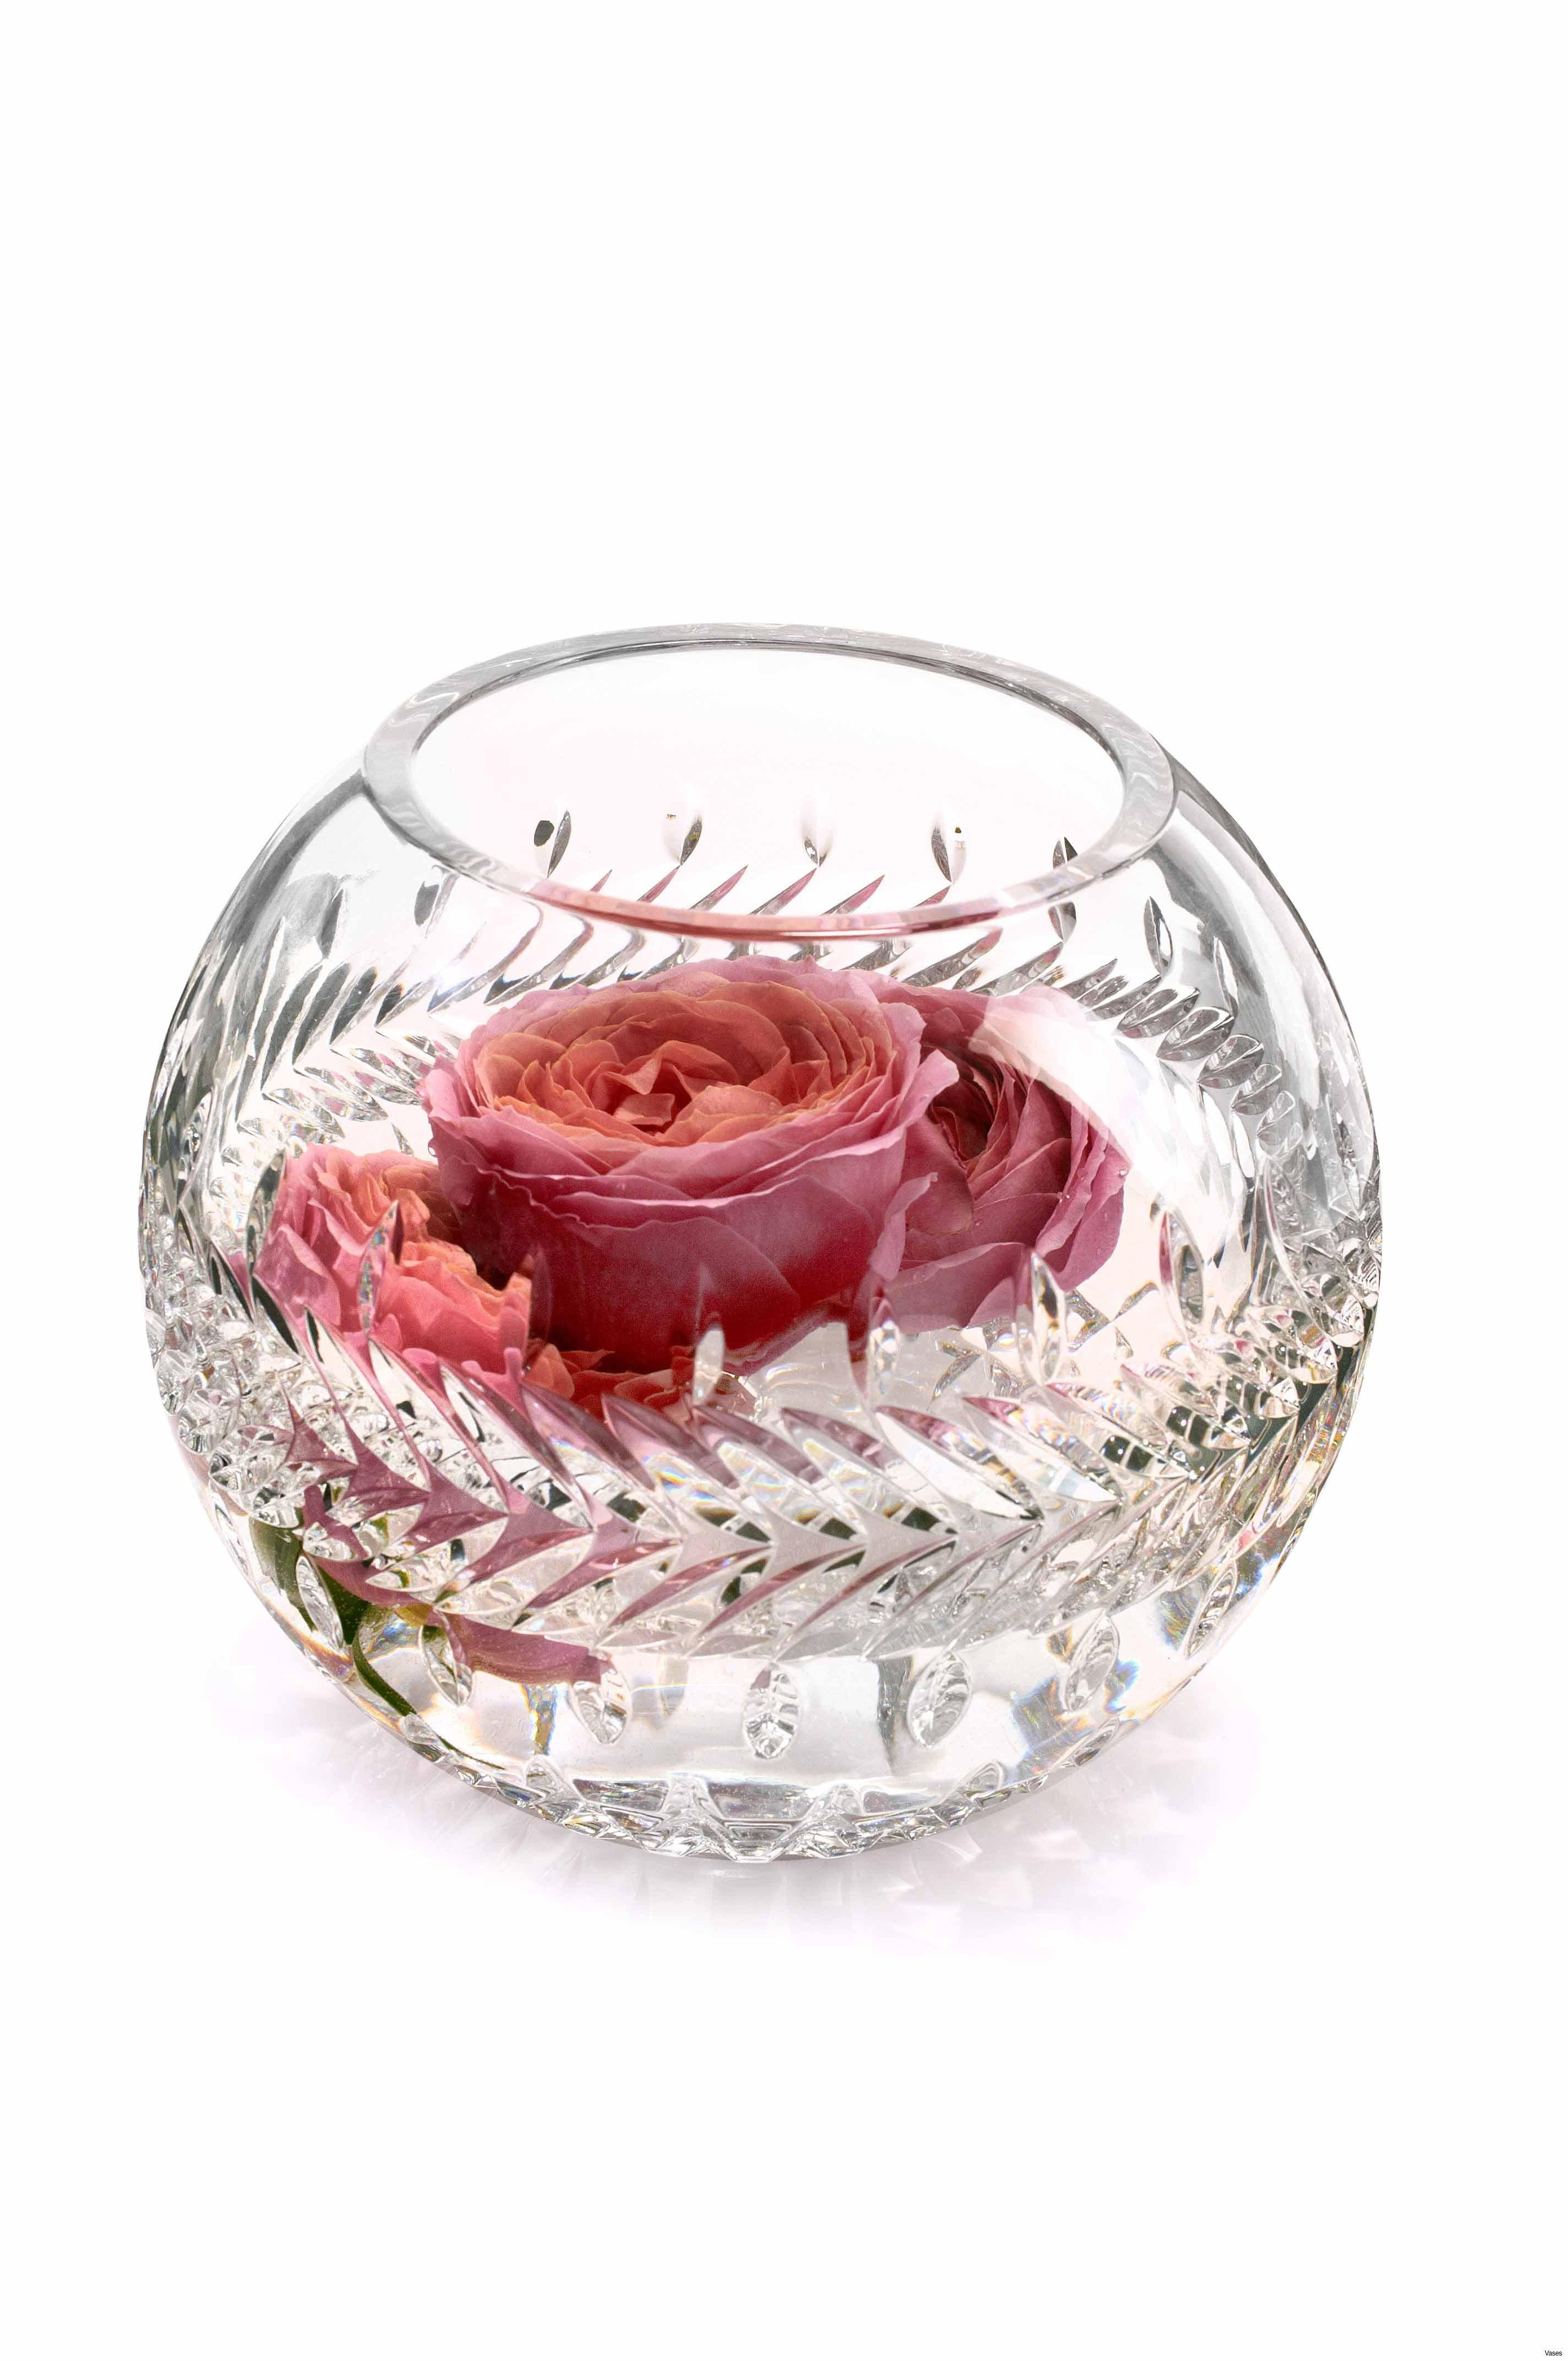 14 Cute Vintage Rose Bowl Vase 2024 free download vintage rose bowl vase of rose bowl vase pictures 35 beautiful rose bowl vases vases with 35 beautiful rose bowl vases